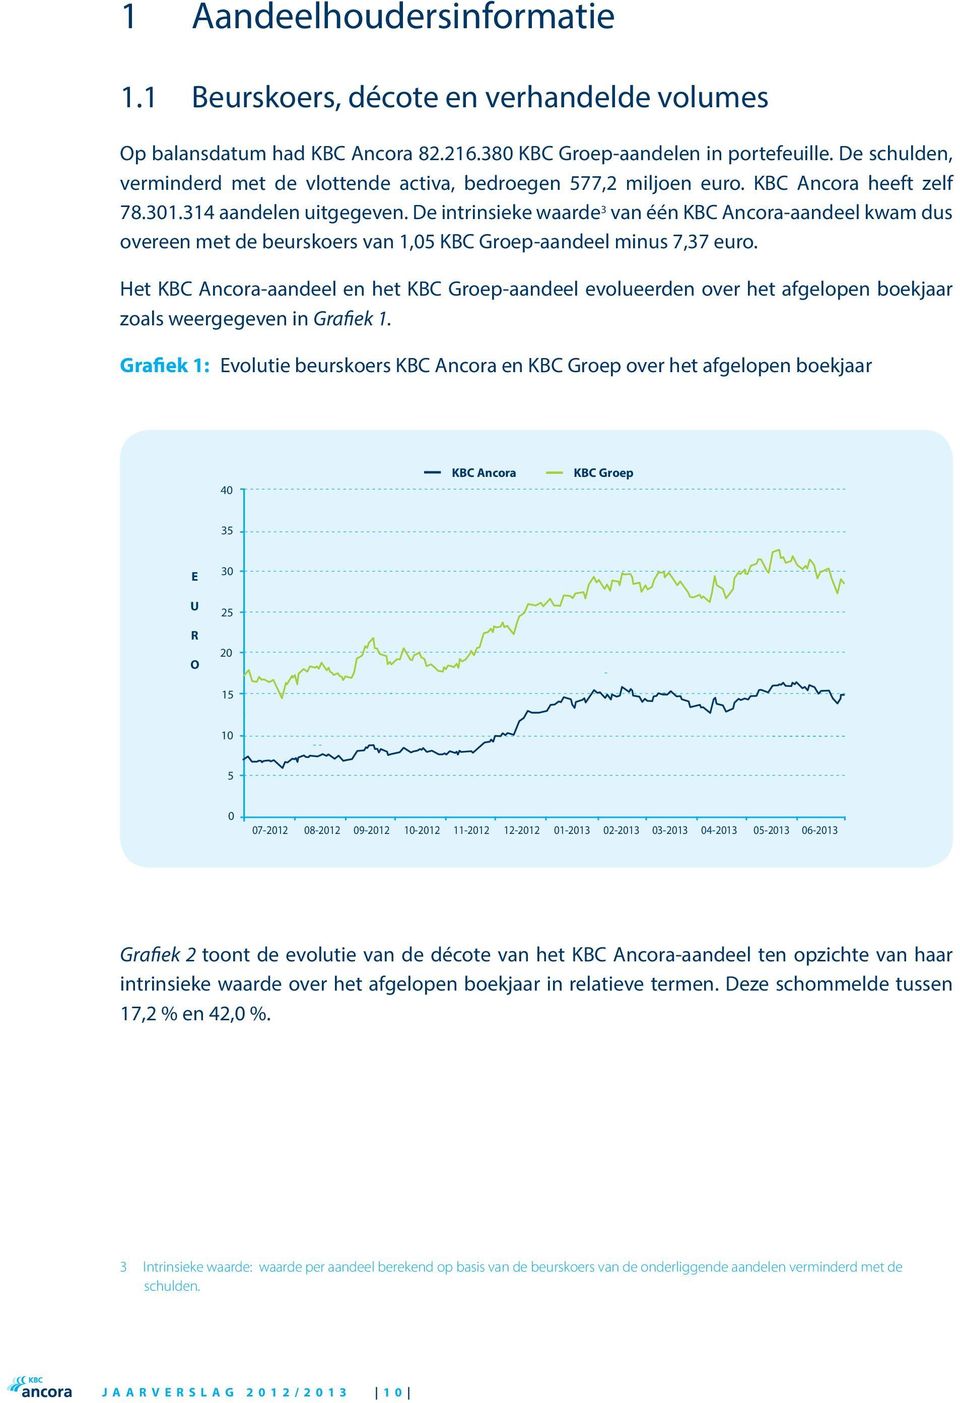 De intrinsieke waarde 3 van één KBC Ancora-aandeel kwam dus overeen met de beurskoers van 1,05 KBC Groep-aandeel minus 7,37 euro.